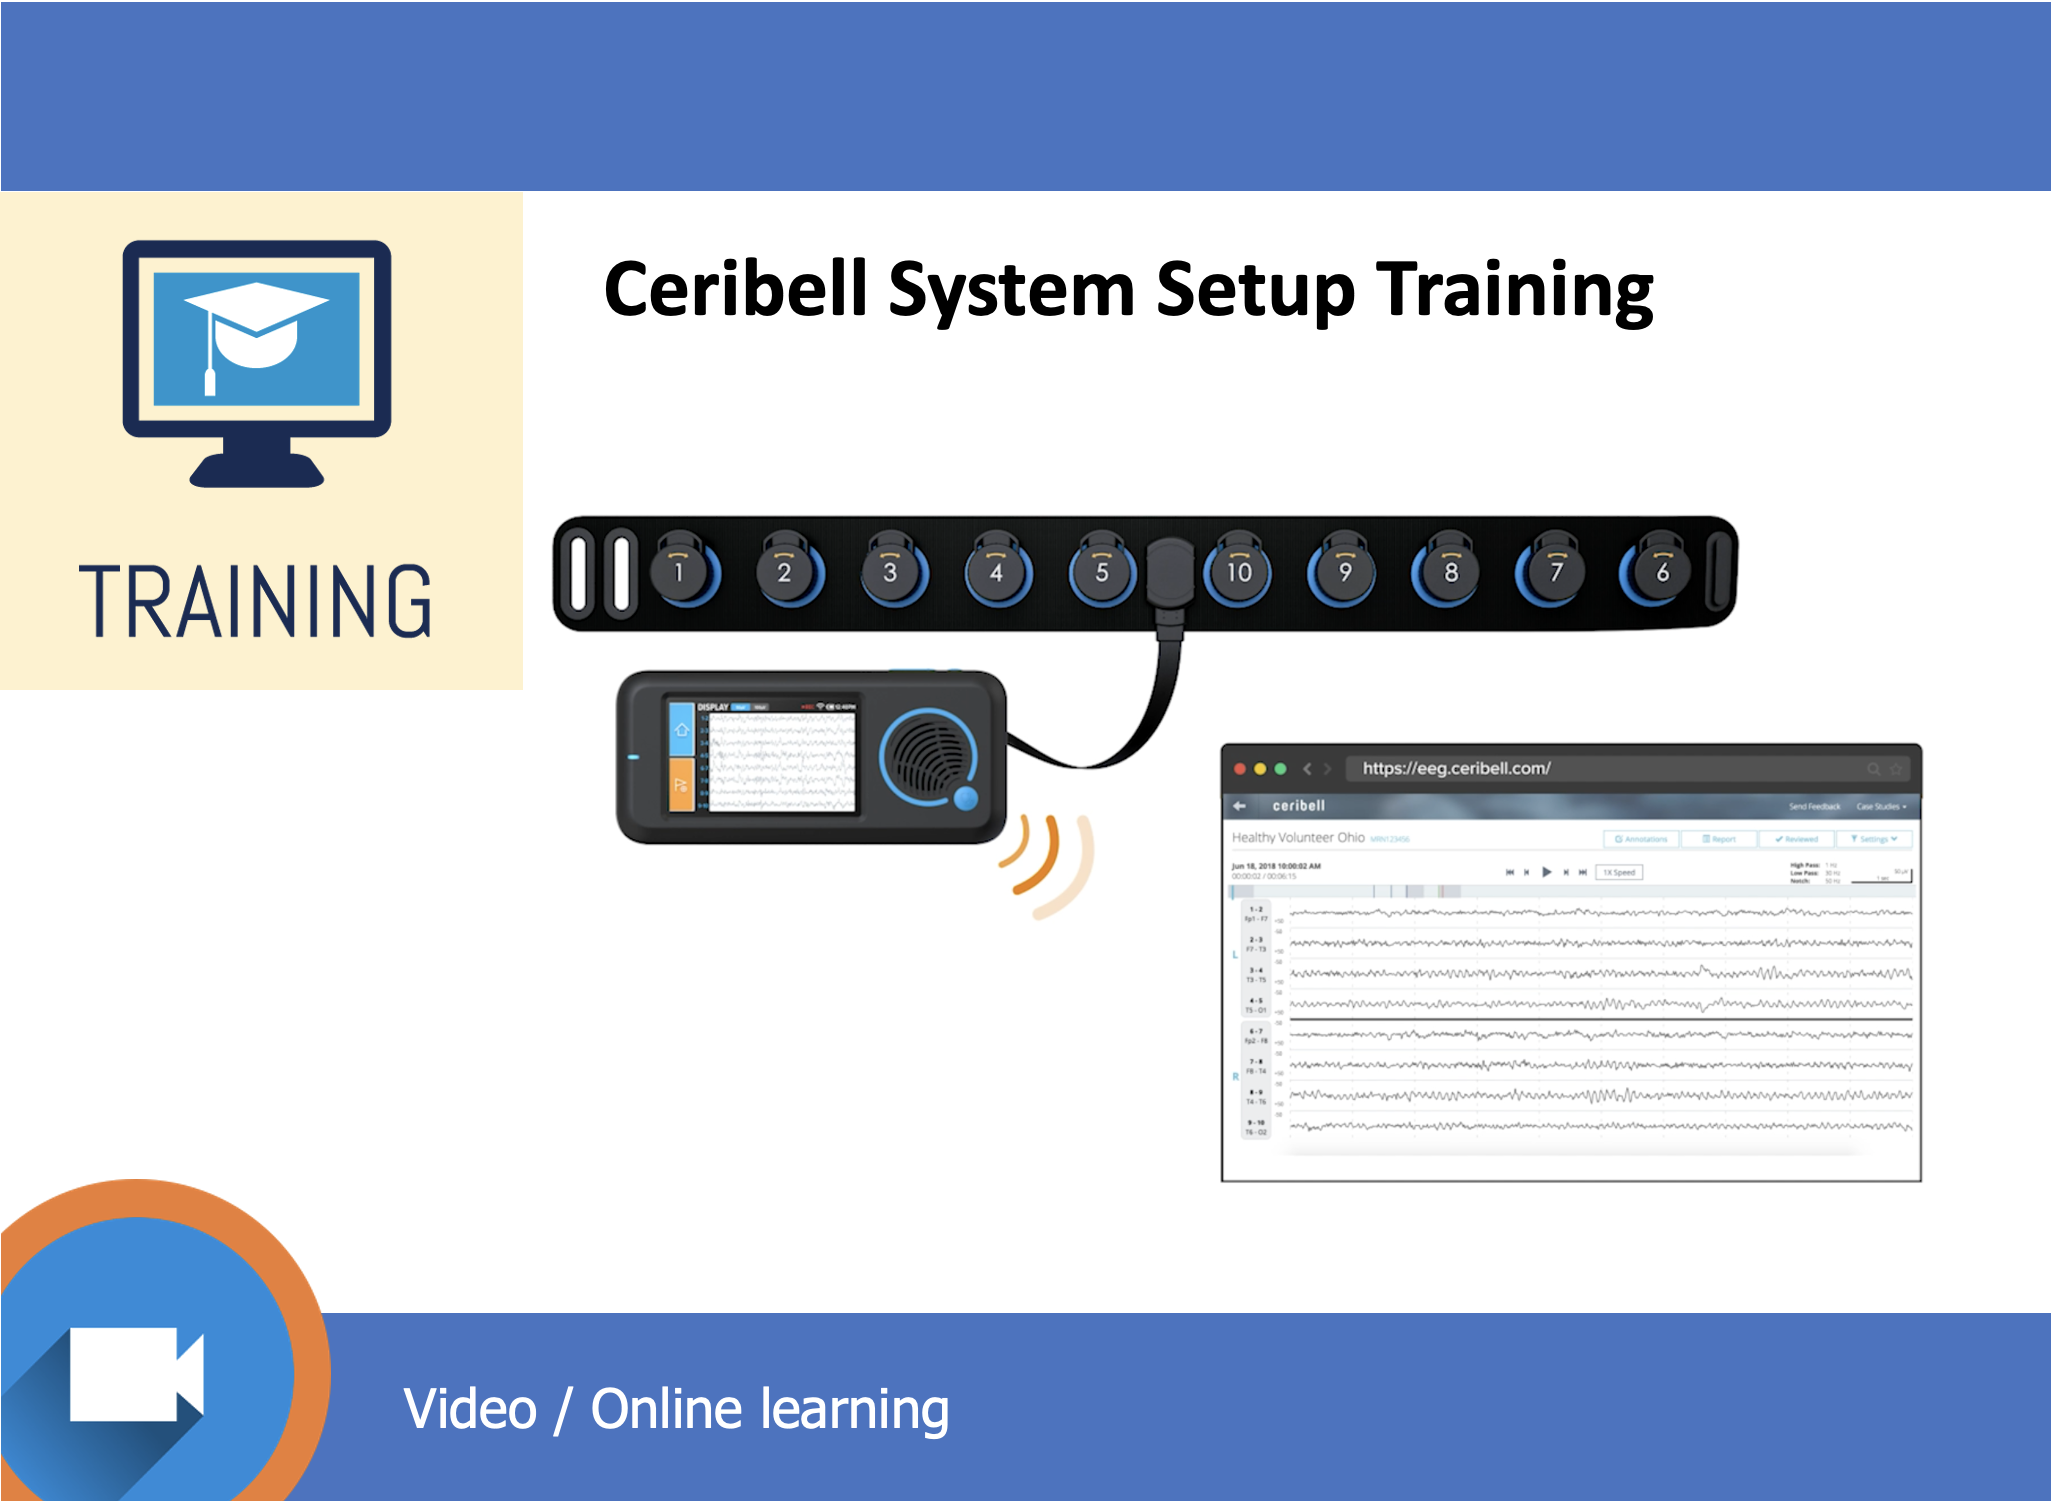 Ceribell System Setup Training